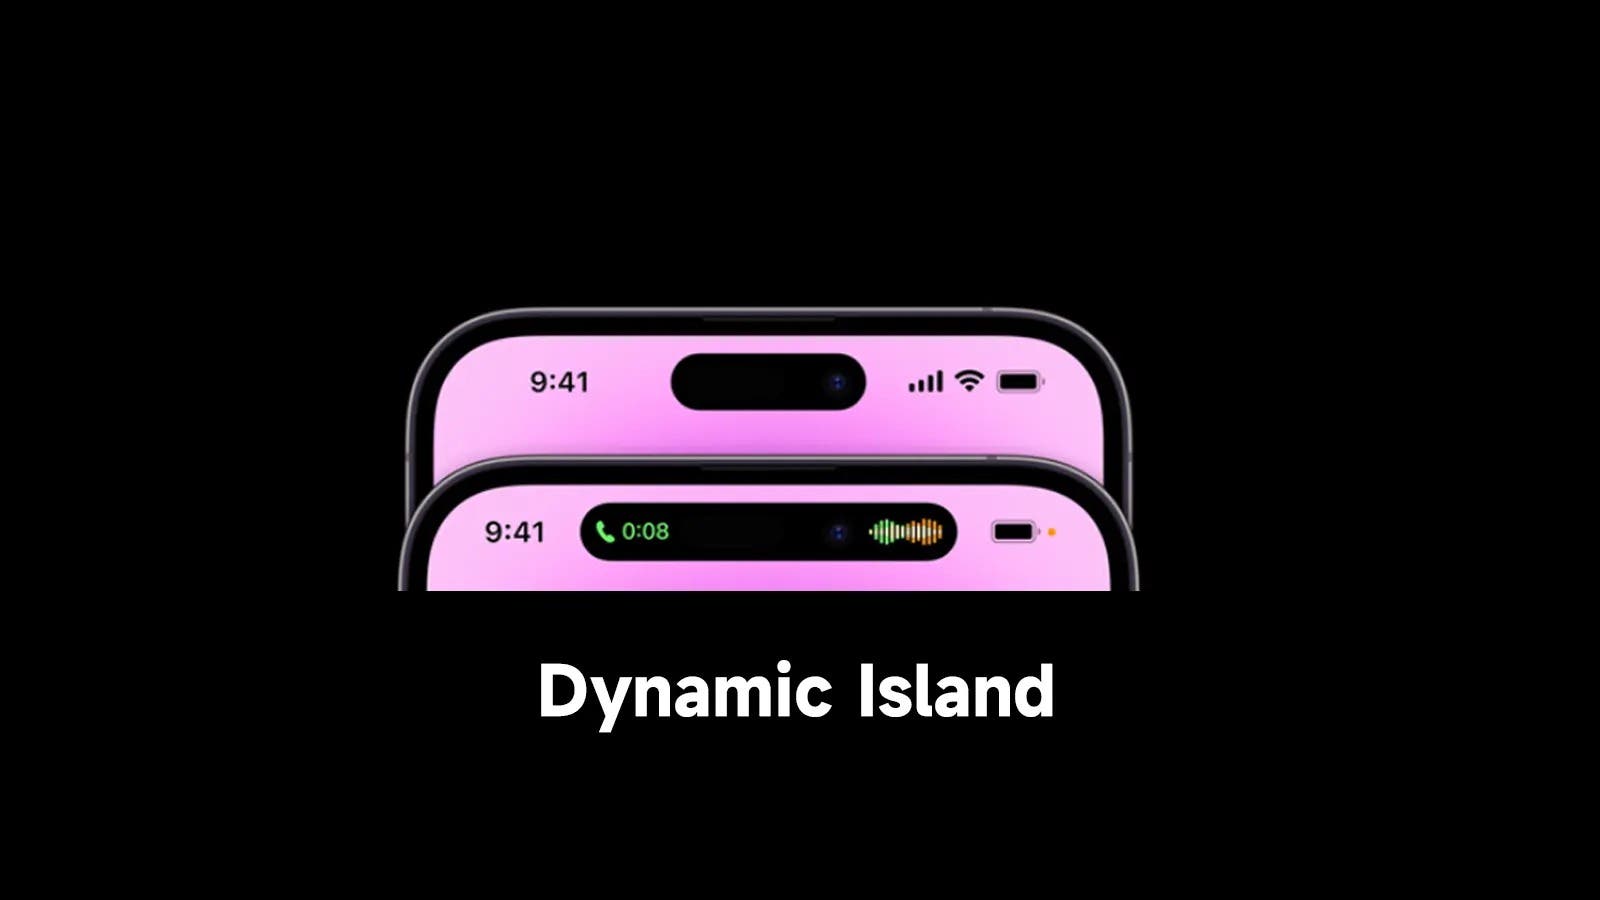 Dynamic Island miui